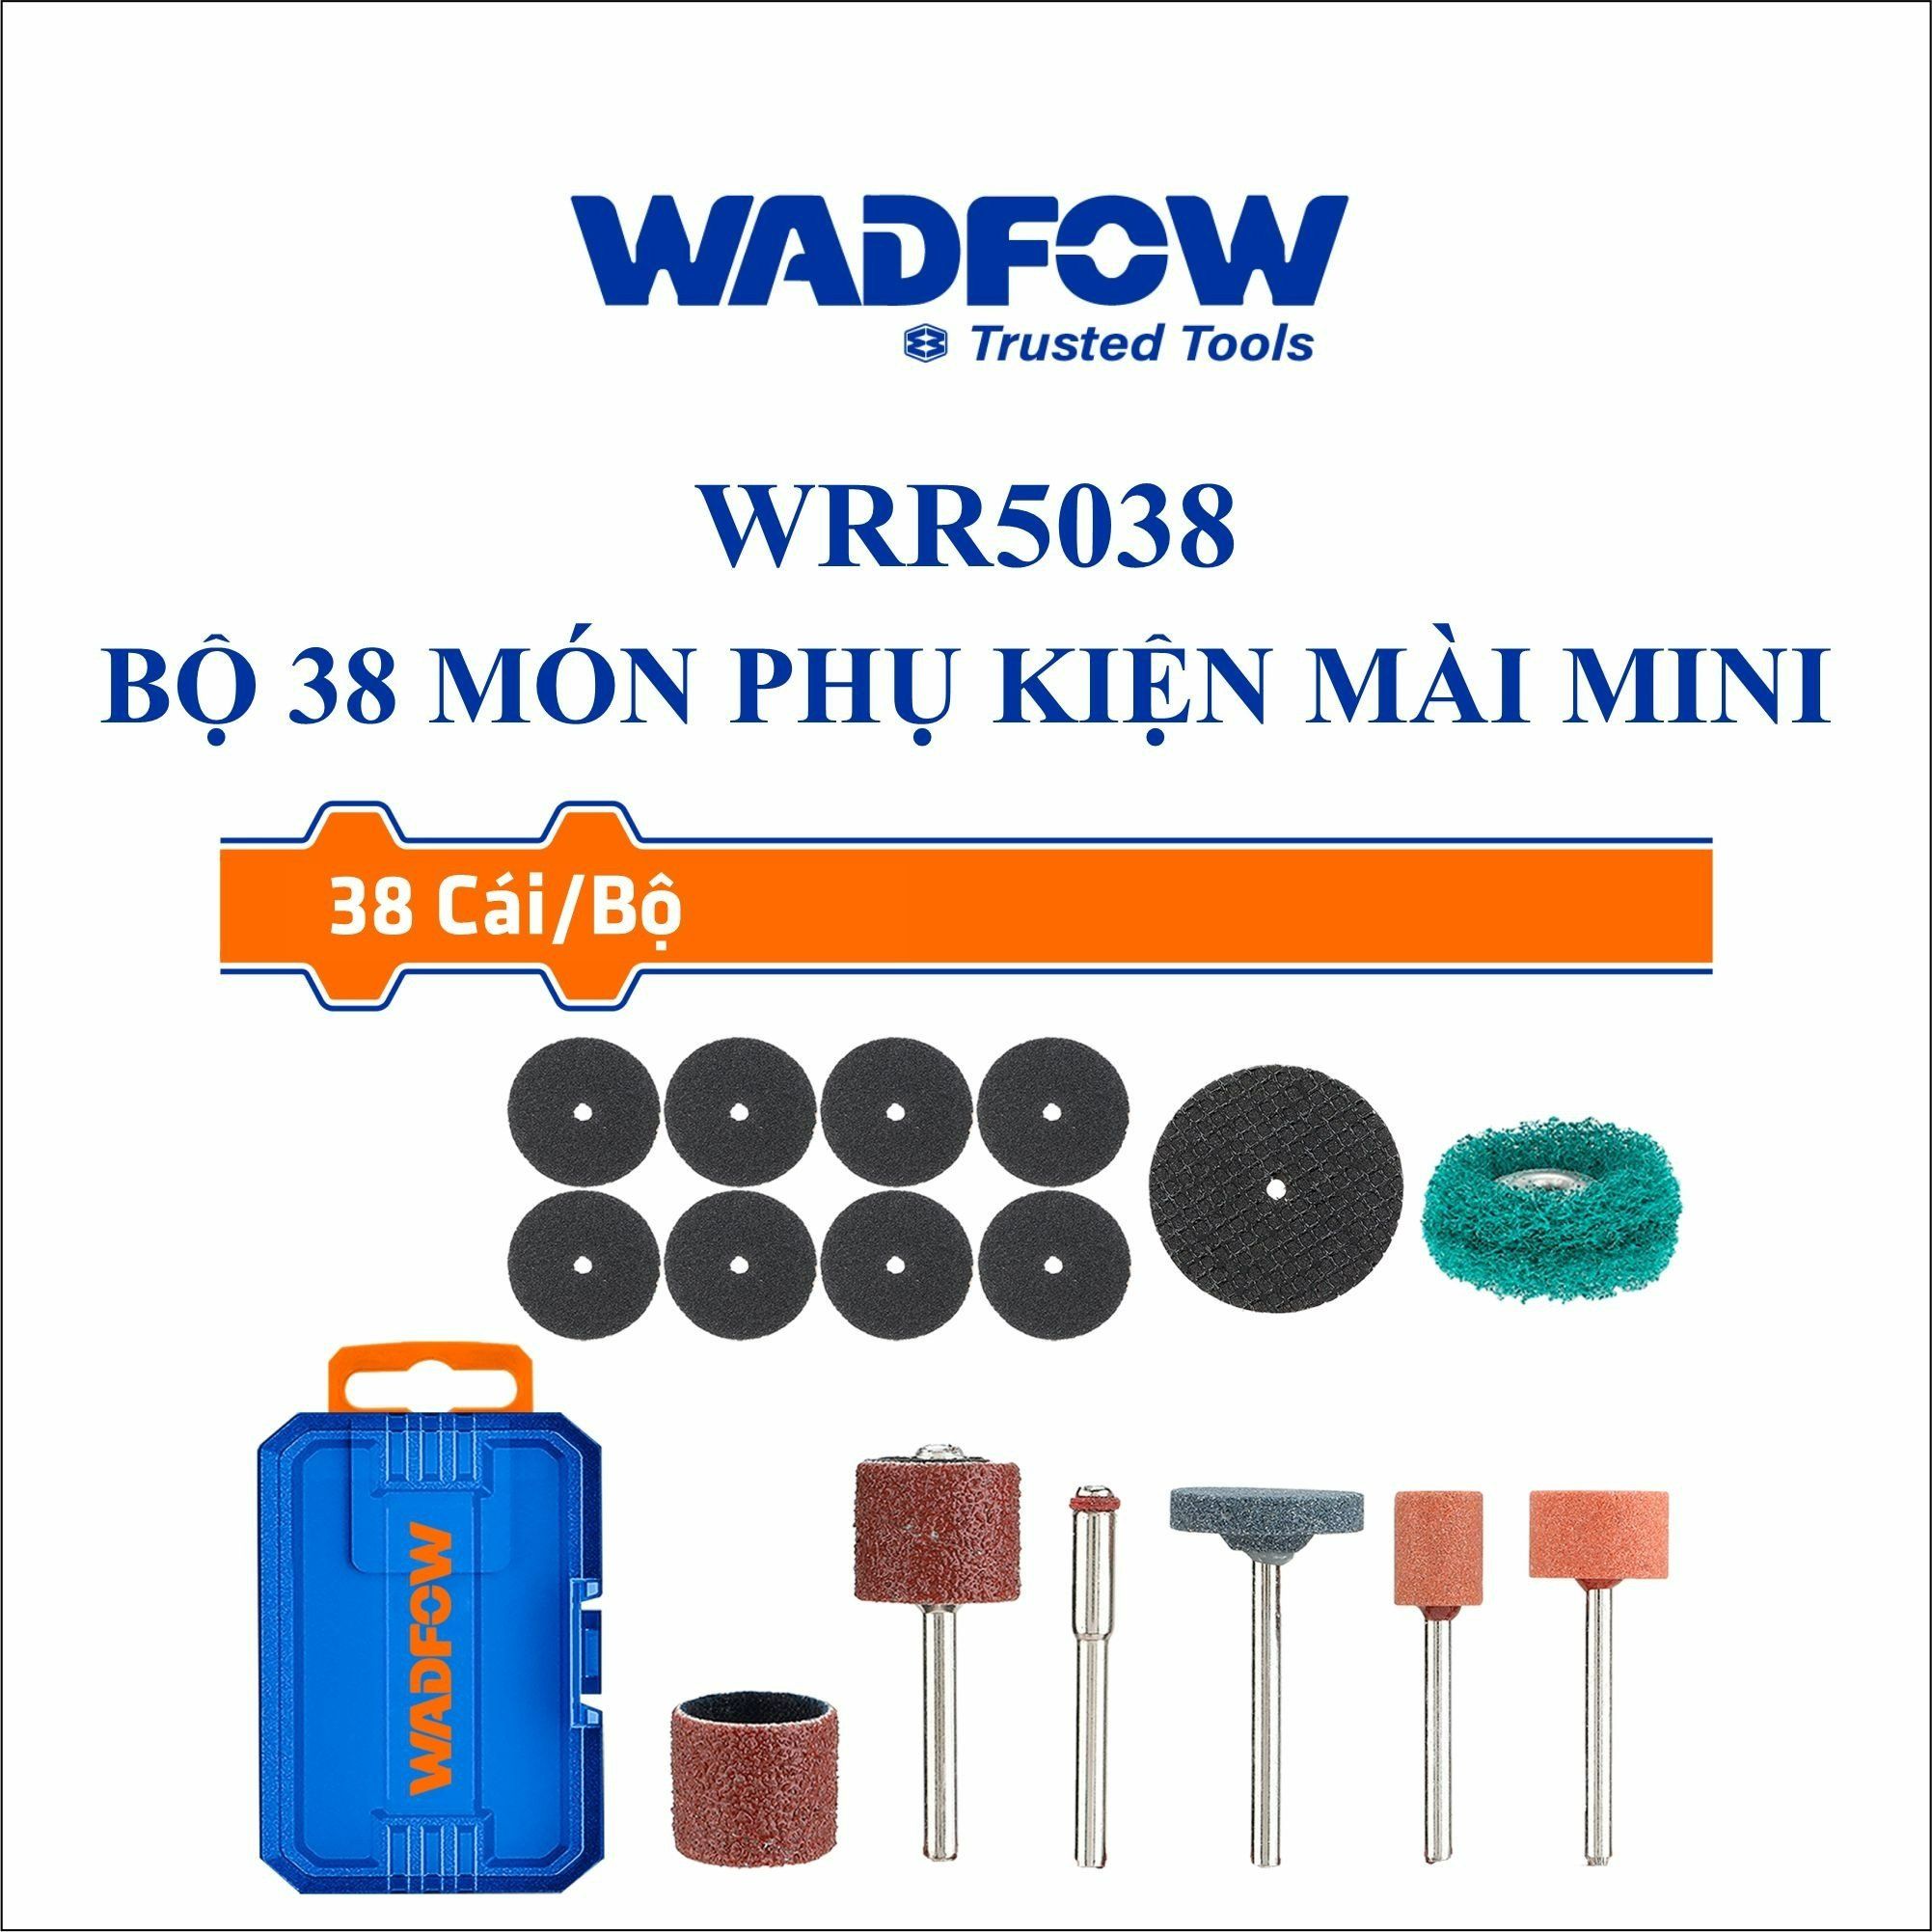  Bộ 38 món phụ kiện mài mini WADFOW WRR5038 